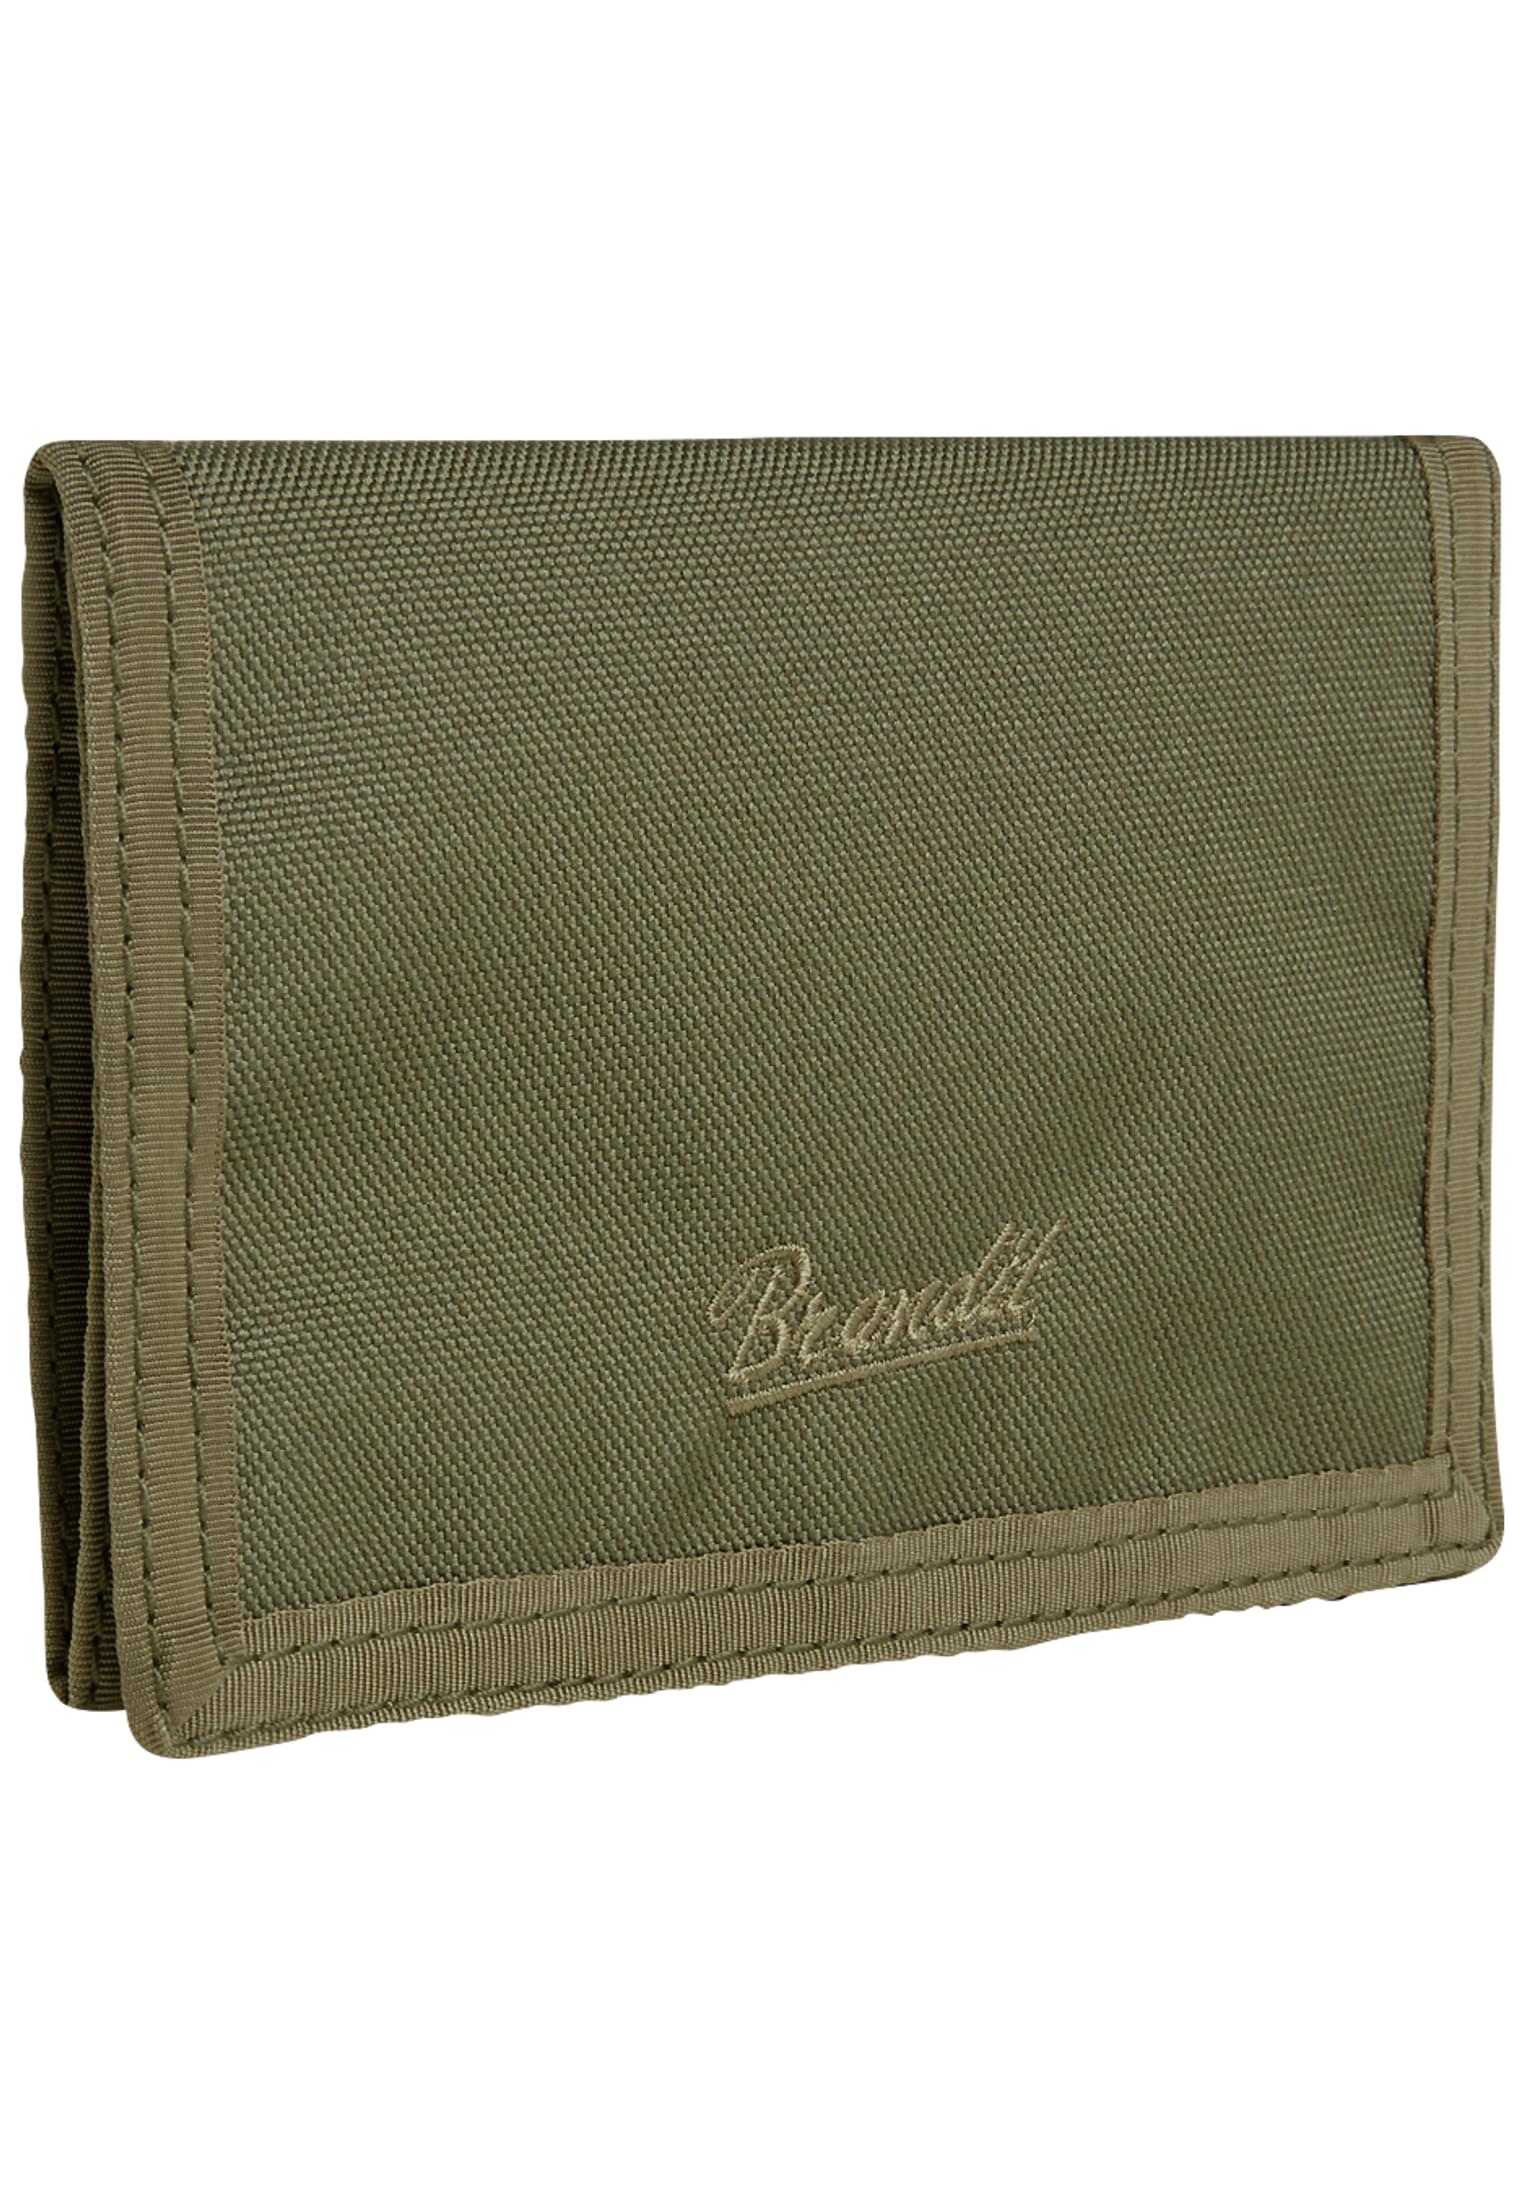 Taschen Wallet Three in Farbe olive